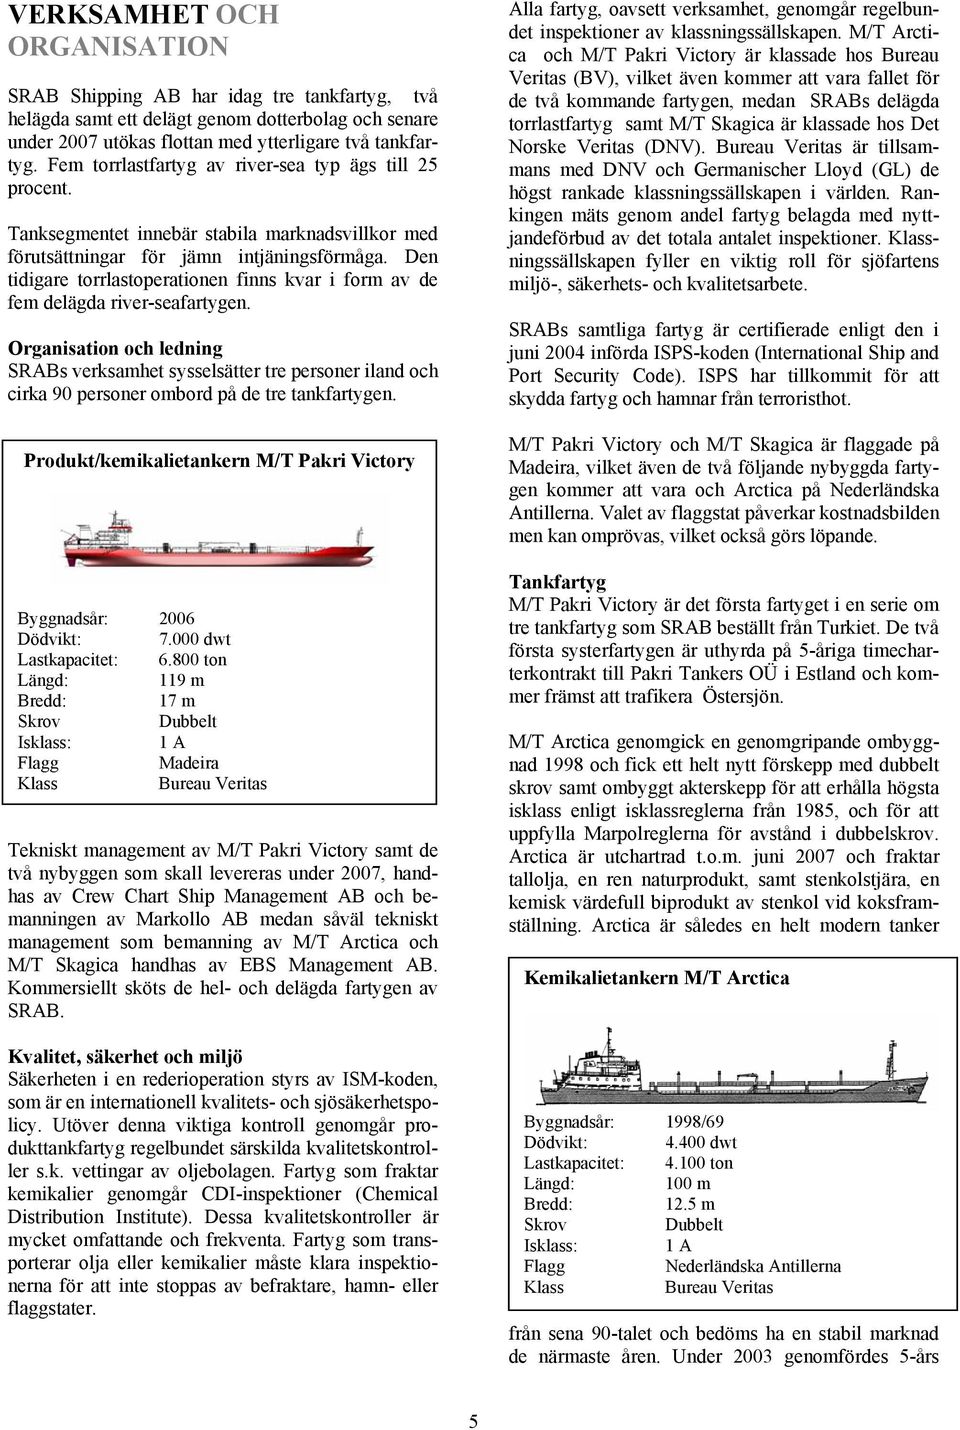 Den tidigare torrlastoperationen finns kvar i form av de fem delägda river-seafartygen.